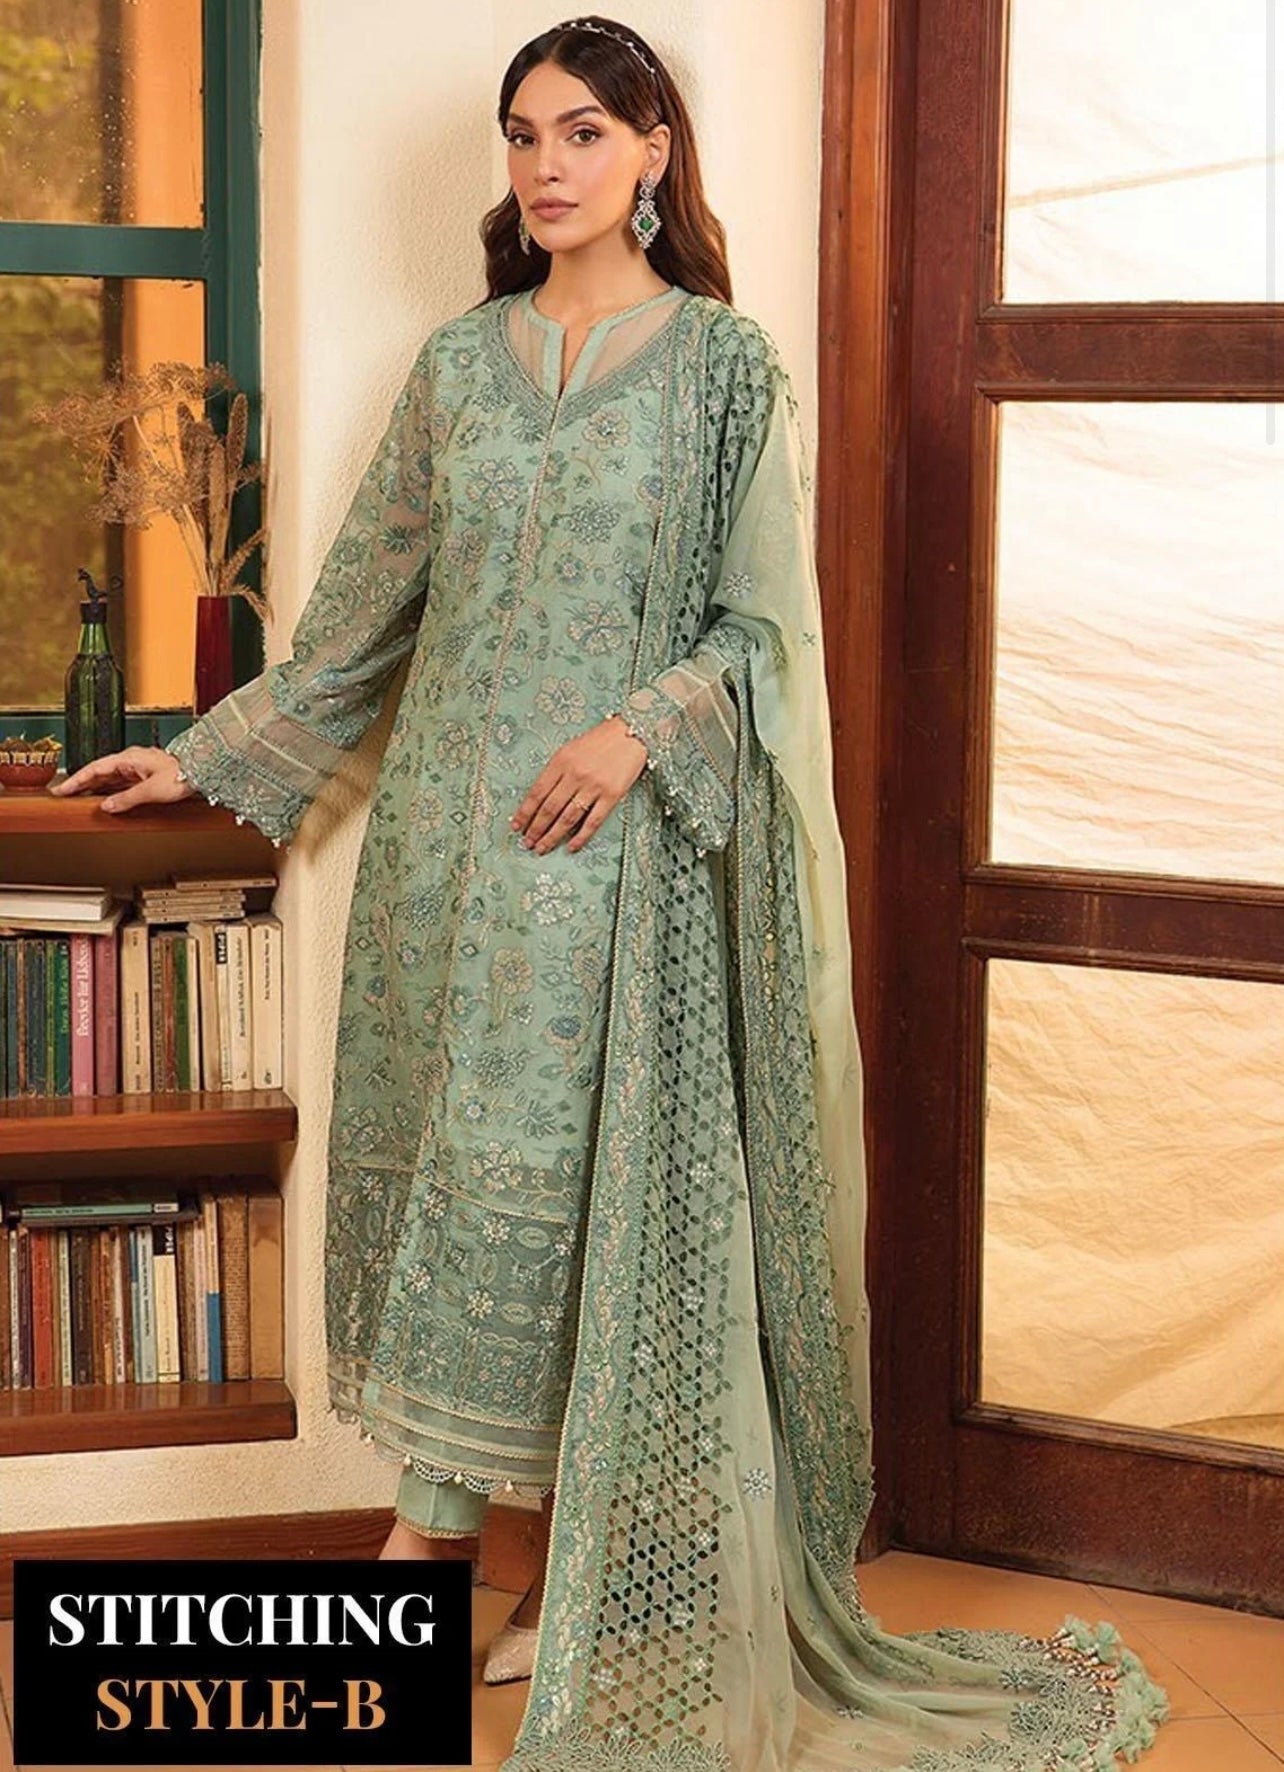  Xenia - Pakistani clothes